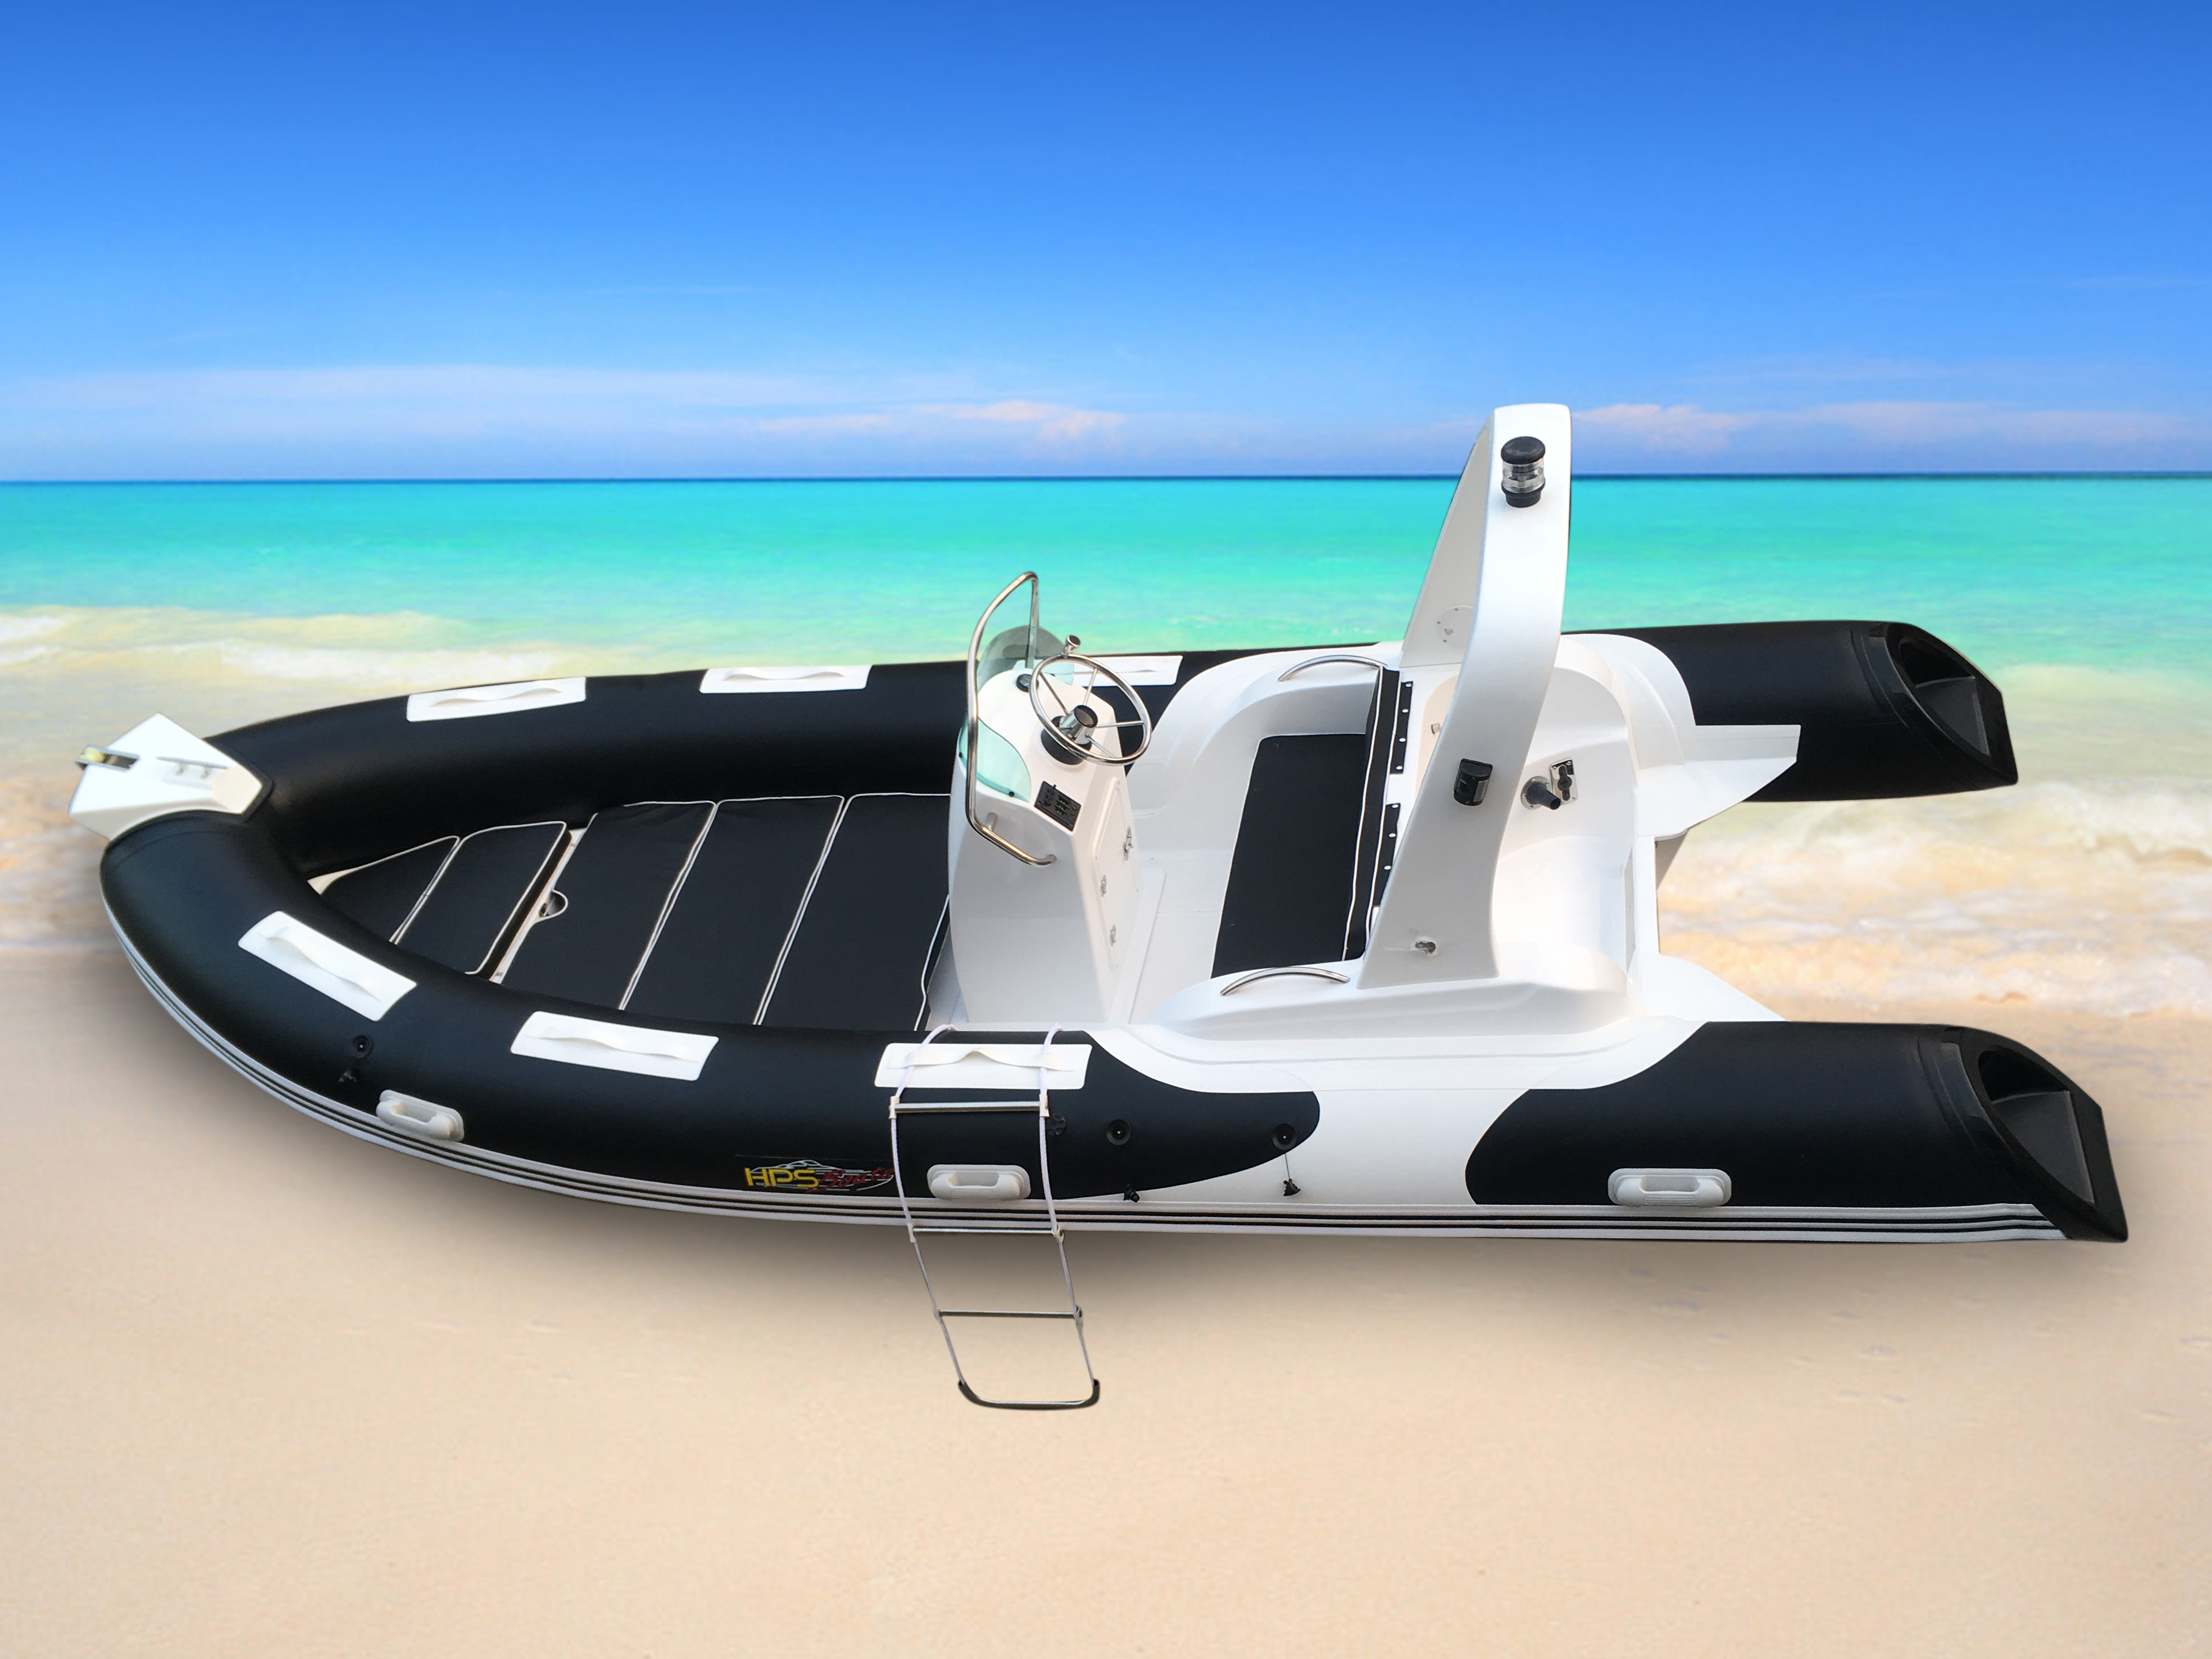 Rib Schlauchboot 5,20m x 2,10m mit GFK Geräteträger!